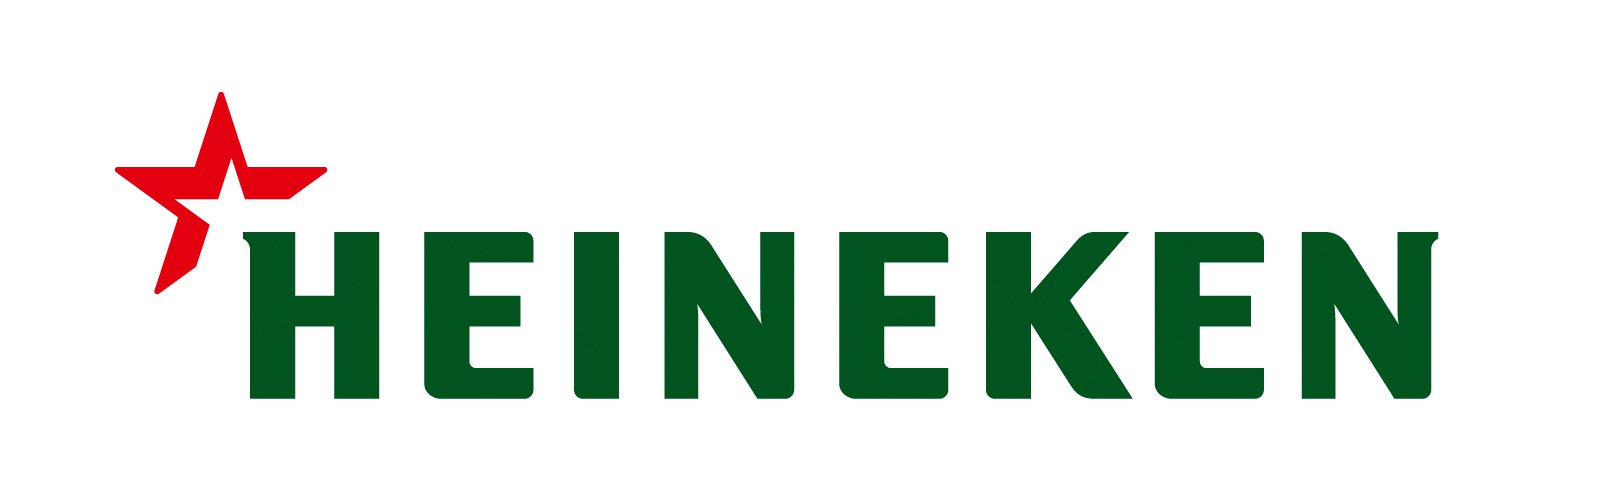 Heineken-emblem